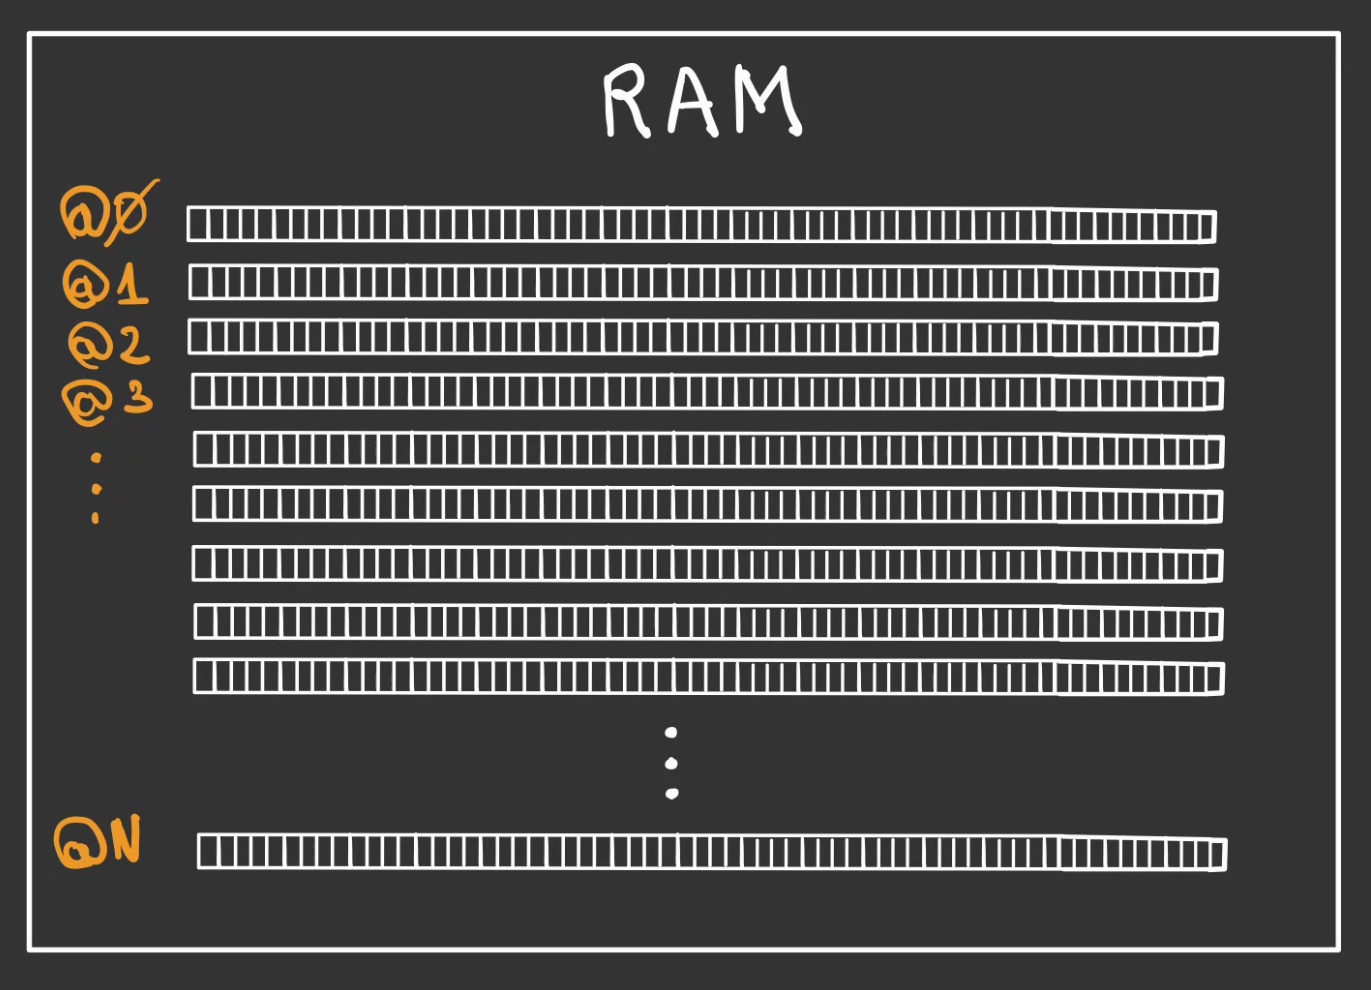 Un rectangle appelé RAM, contient des rectangles tout en longueur subdivisé horizontalement en des rectangles plus petits. Les rectangles subdivisés sont empilés verticalement et numéroté @1 jusqu'à @N